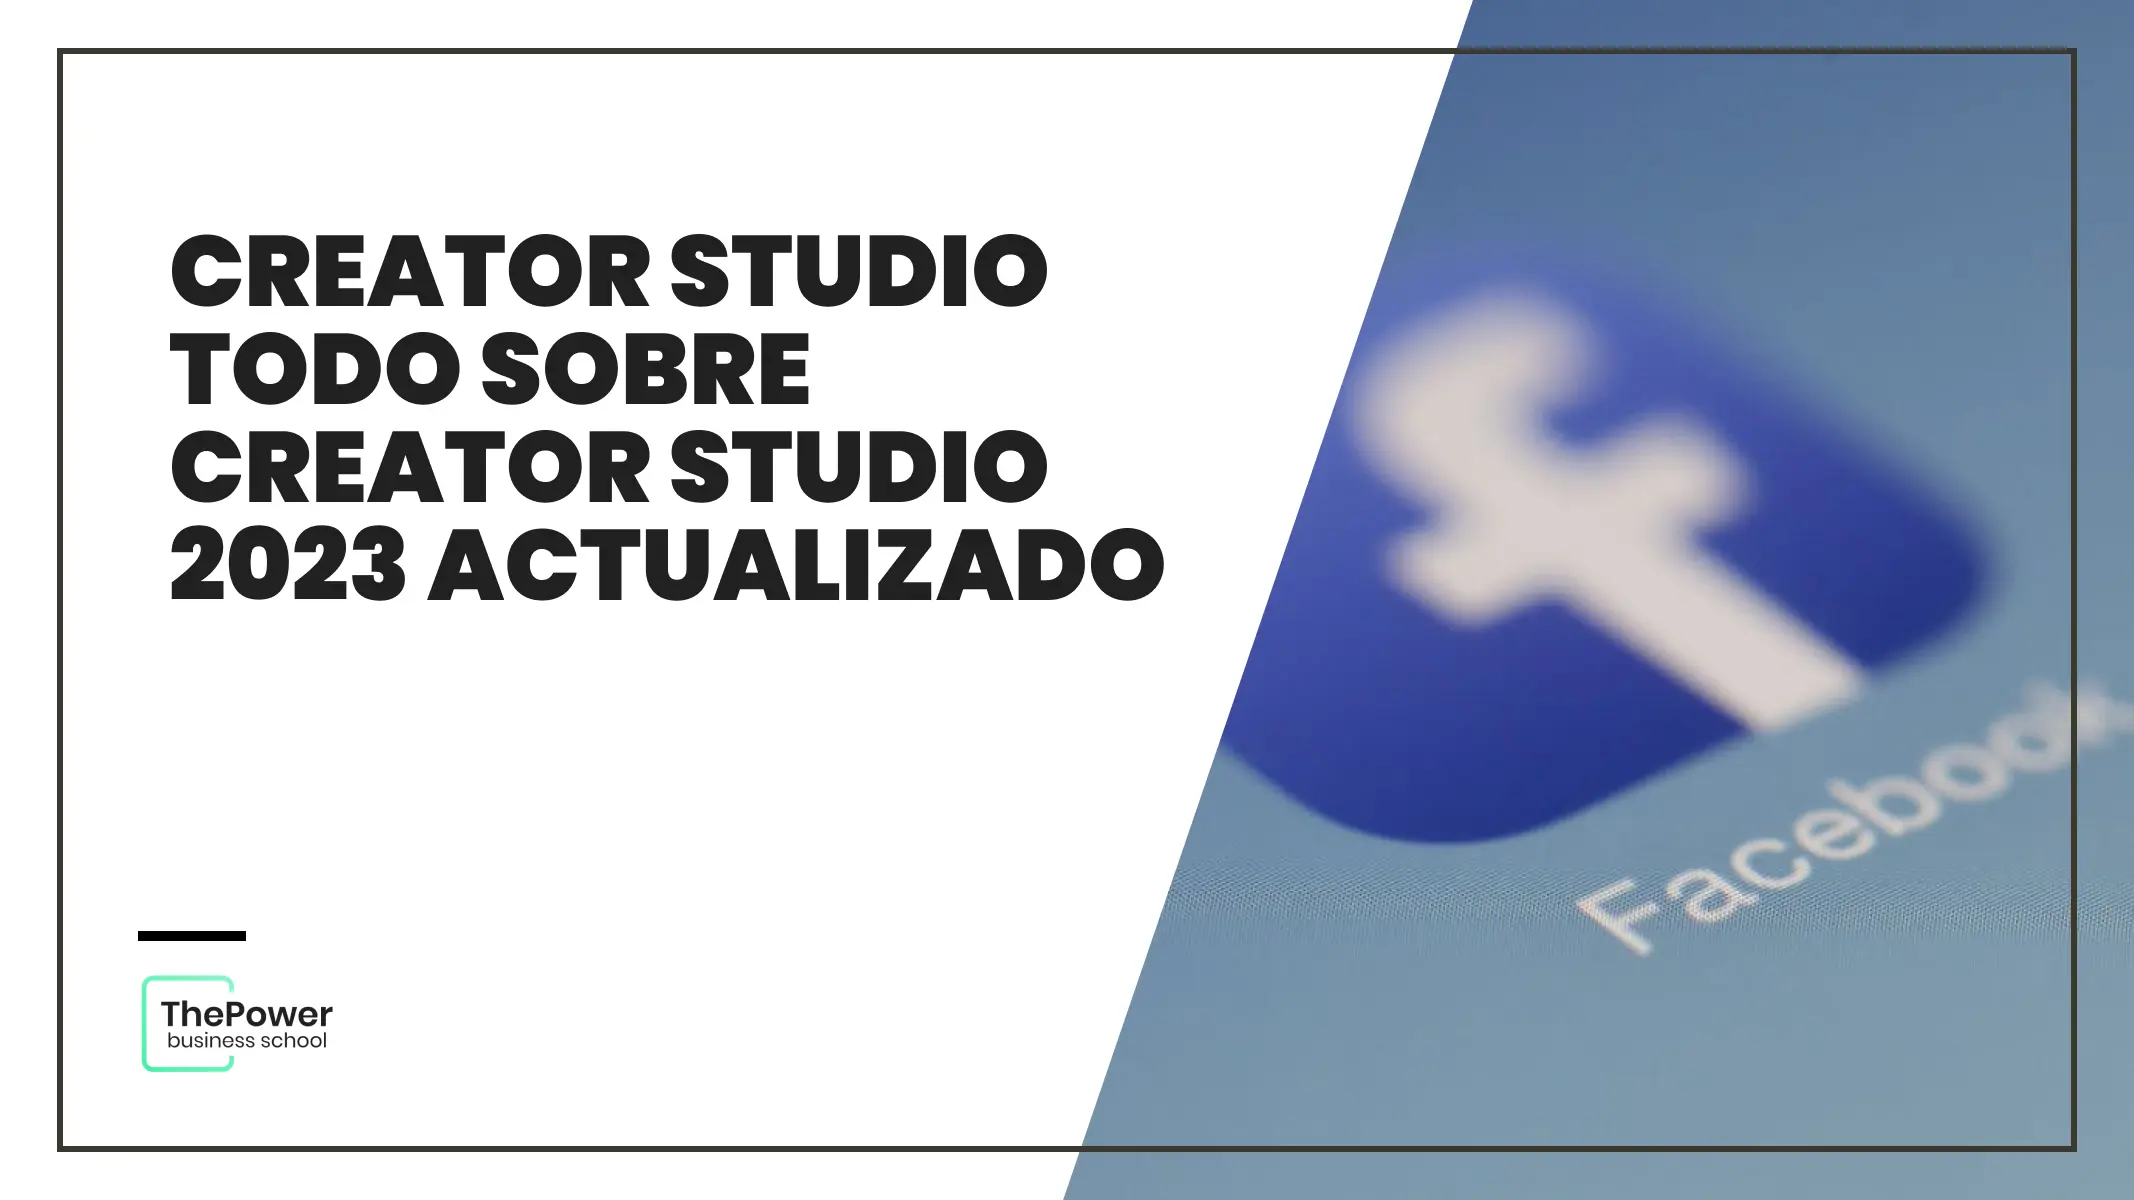 Creator Studio Todo sobre Creator Studio 2023 ACTUALIZADO